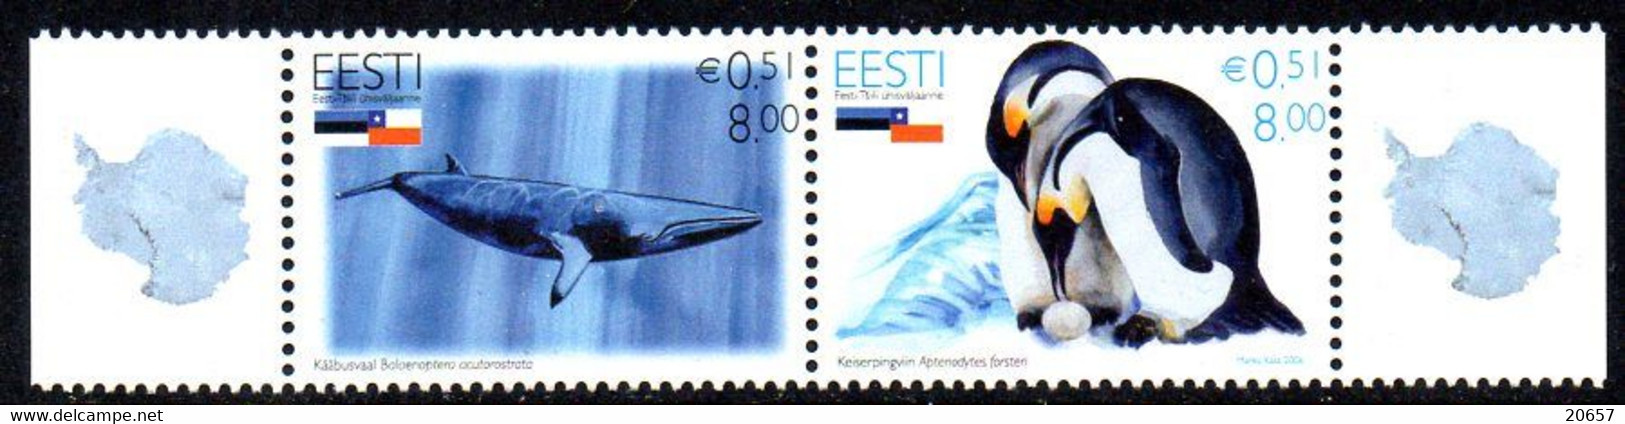 Estonie Eesti 0531/32 Antarctique, Baleine, Pingouin - Antarktischen Tierwelt